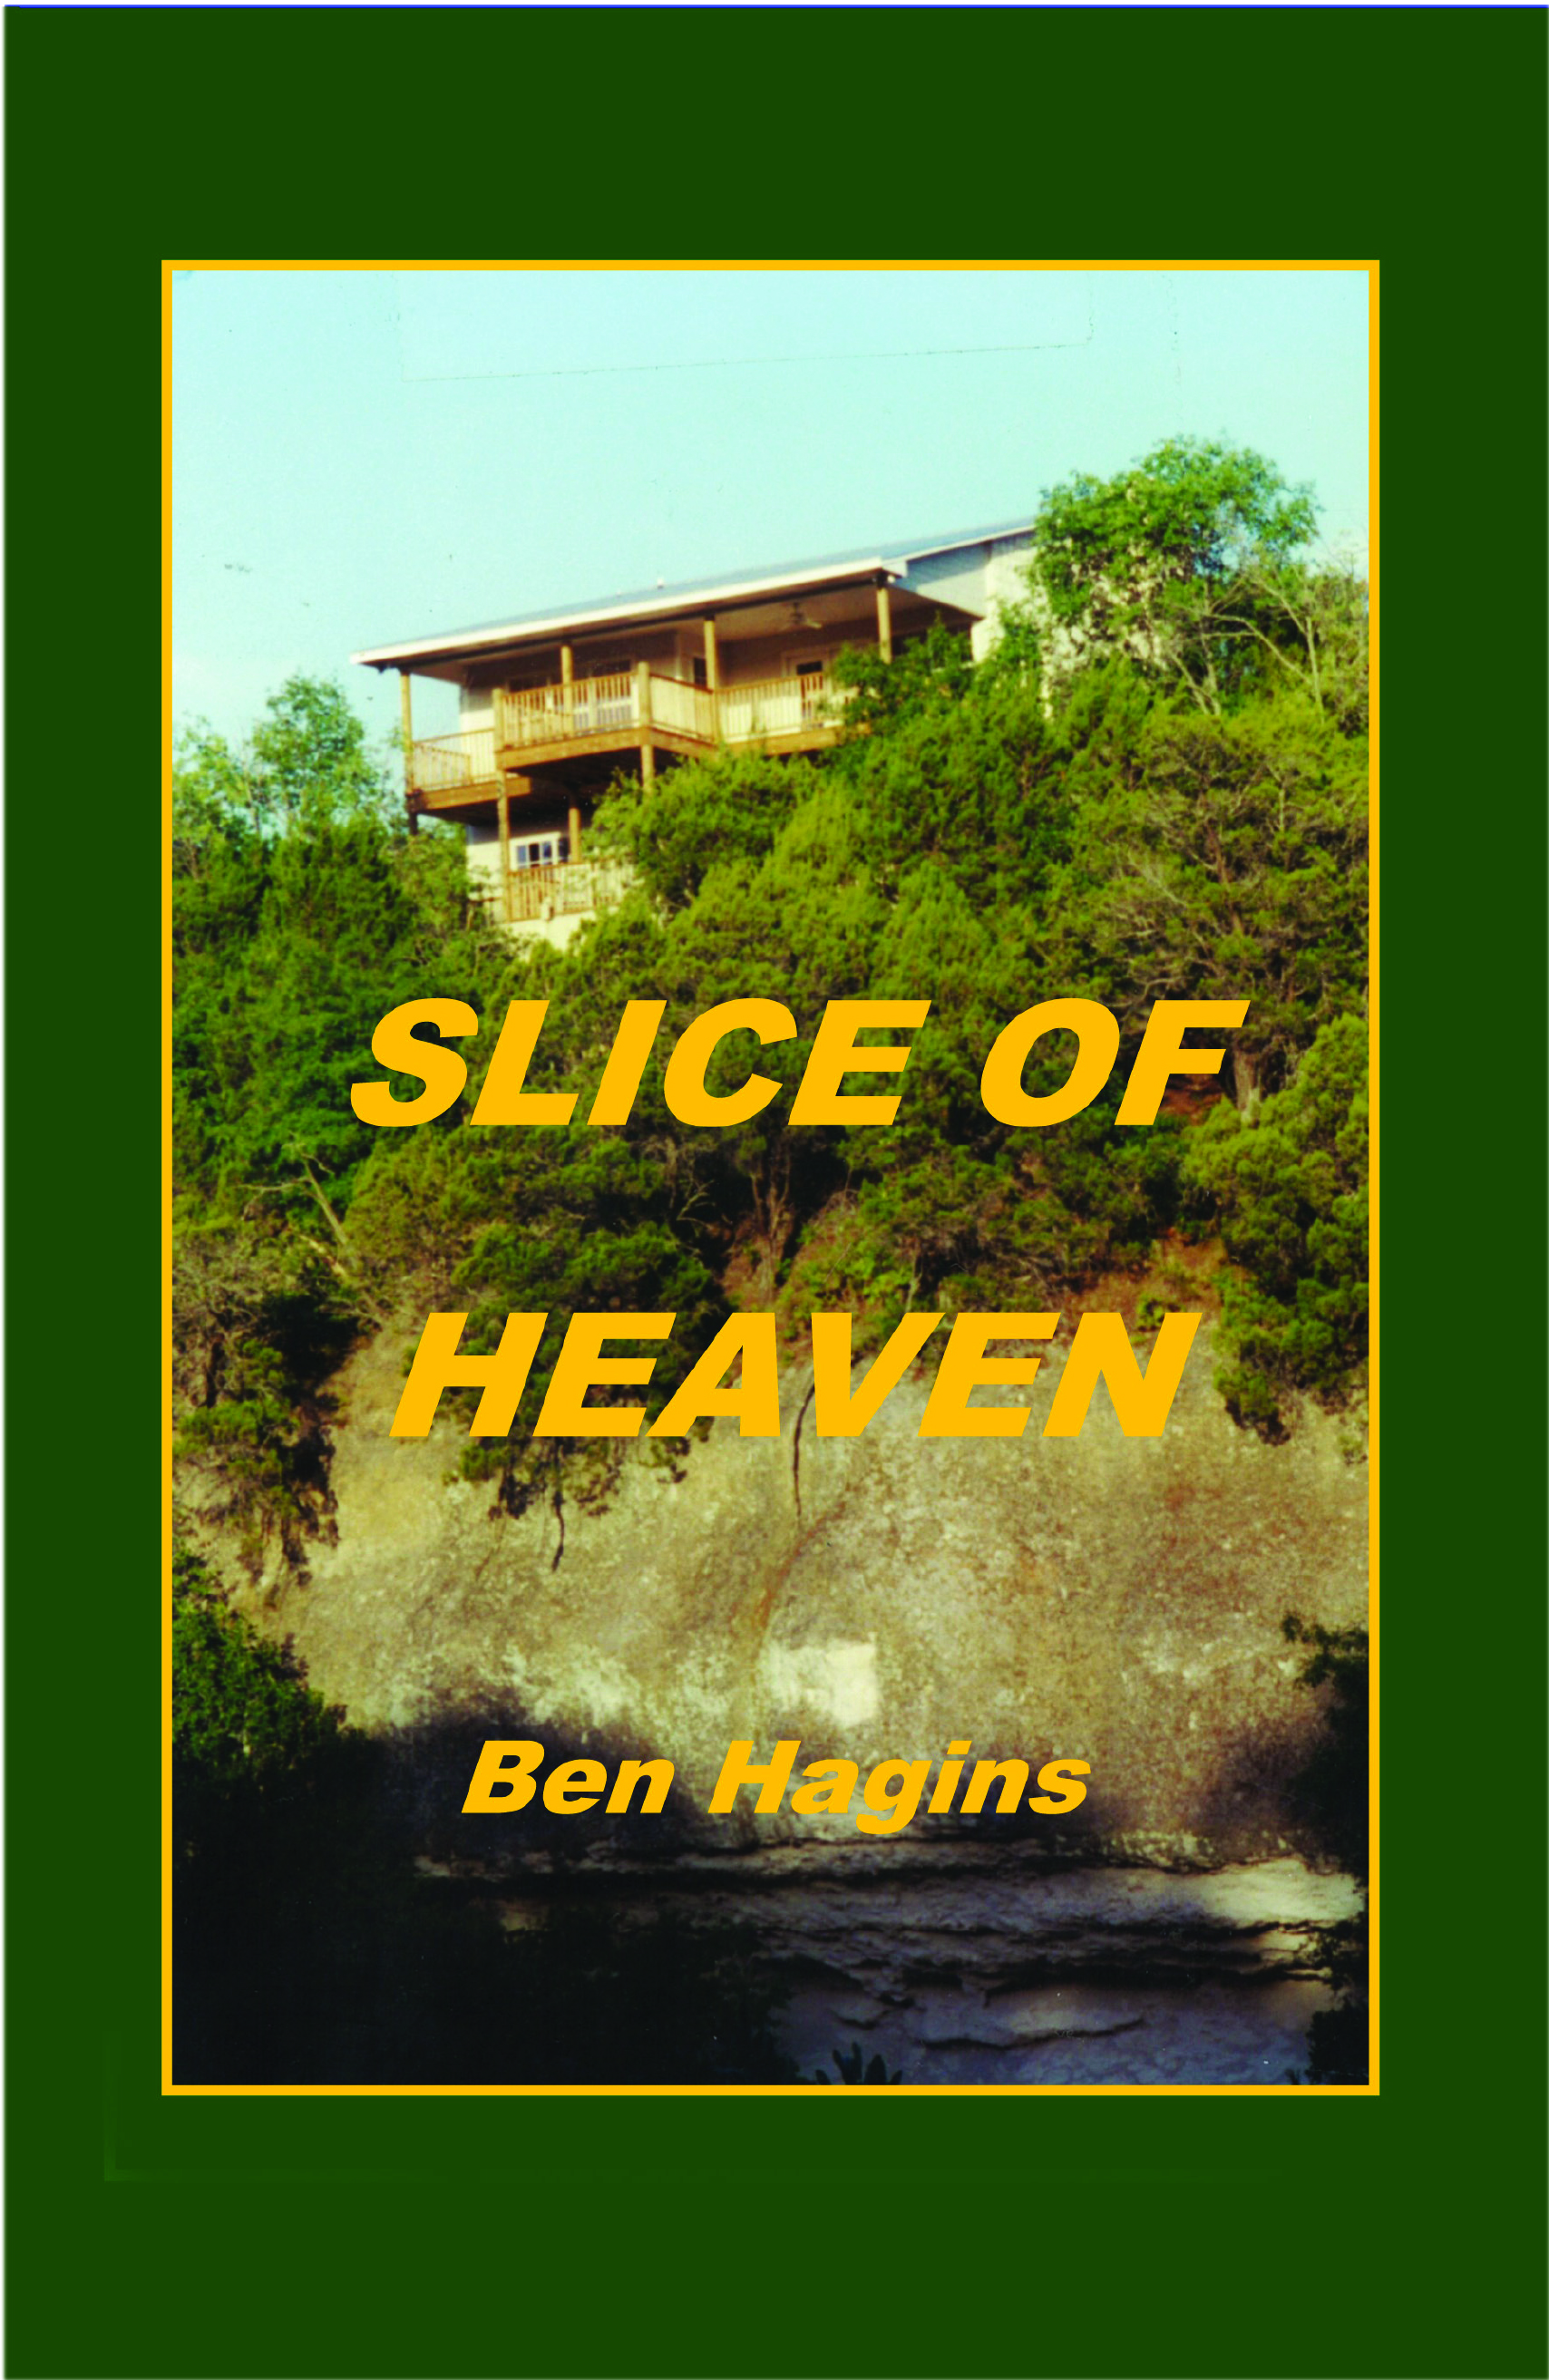 Slice of Heaven by Ben Hagins